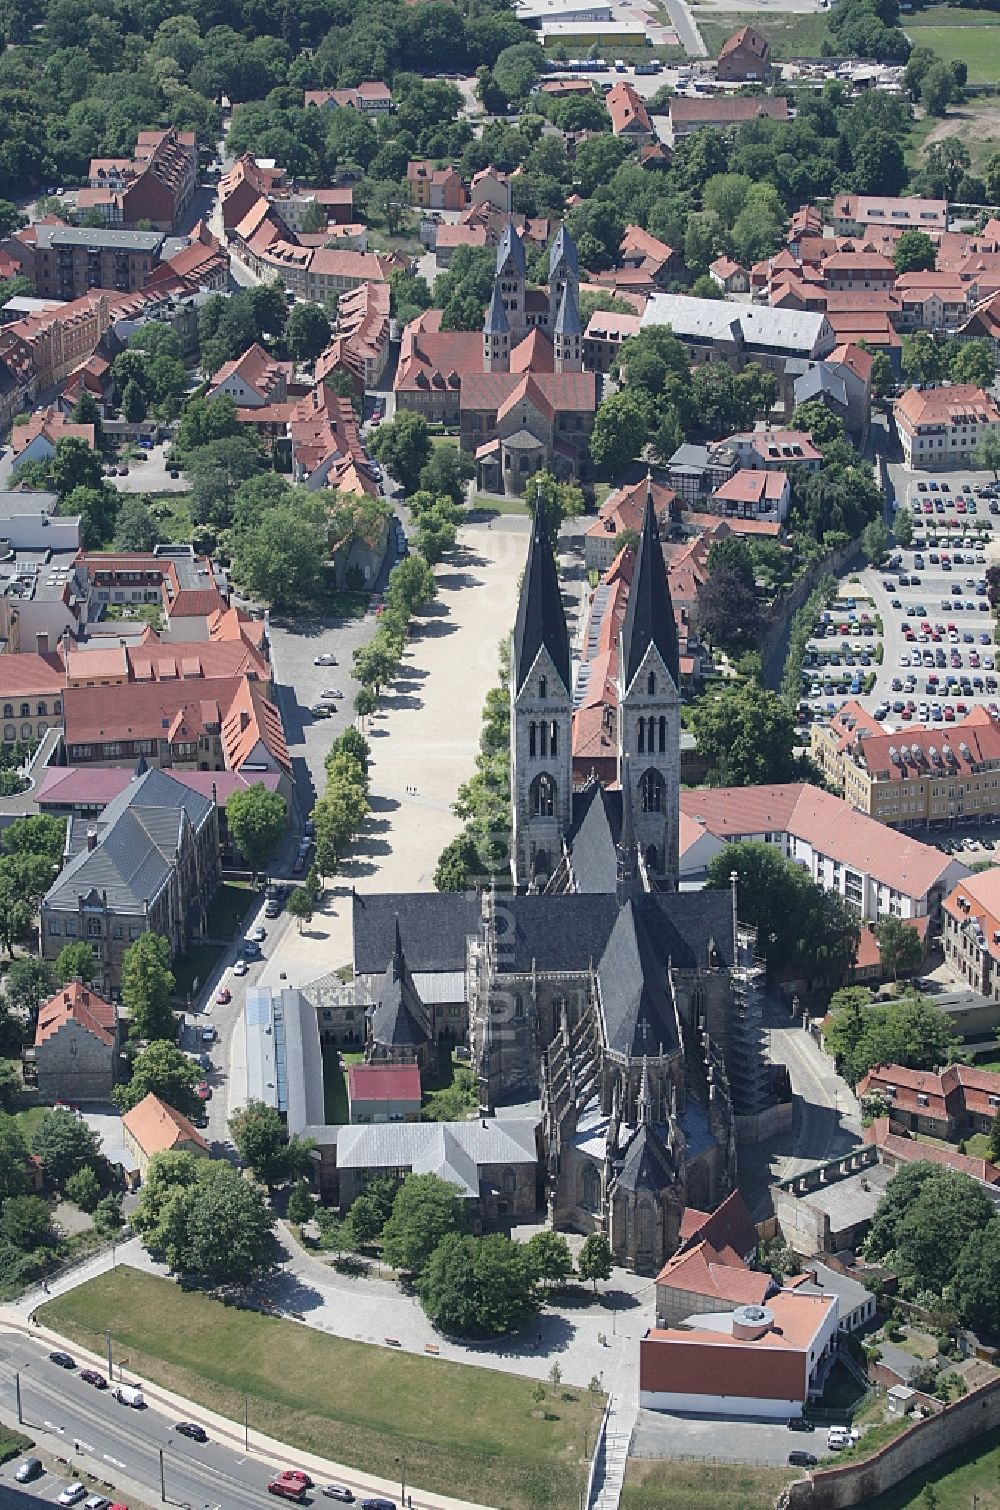 Halberstadt aus der Vogelperspektive: Zentrum der historischen Altstadt von Halberstadt mit Dom und Kirchen im Bundesland Sachsen-Anhalt